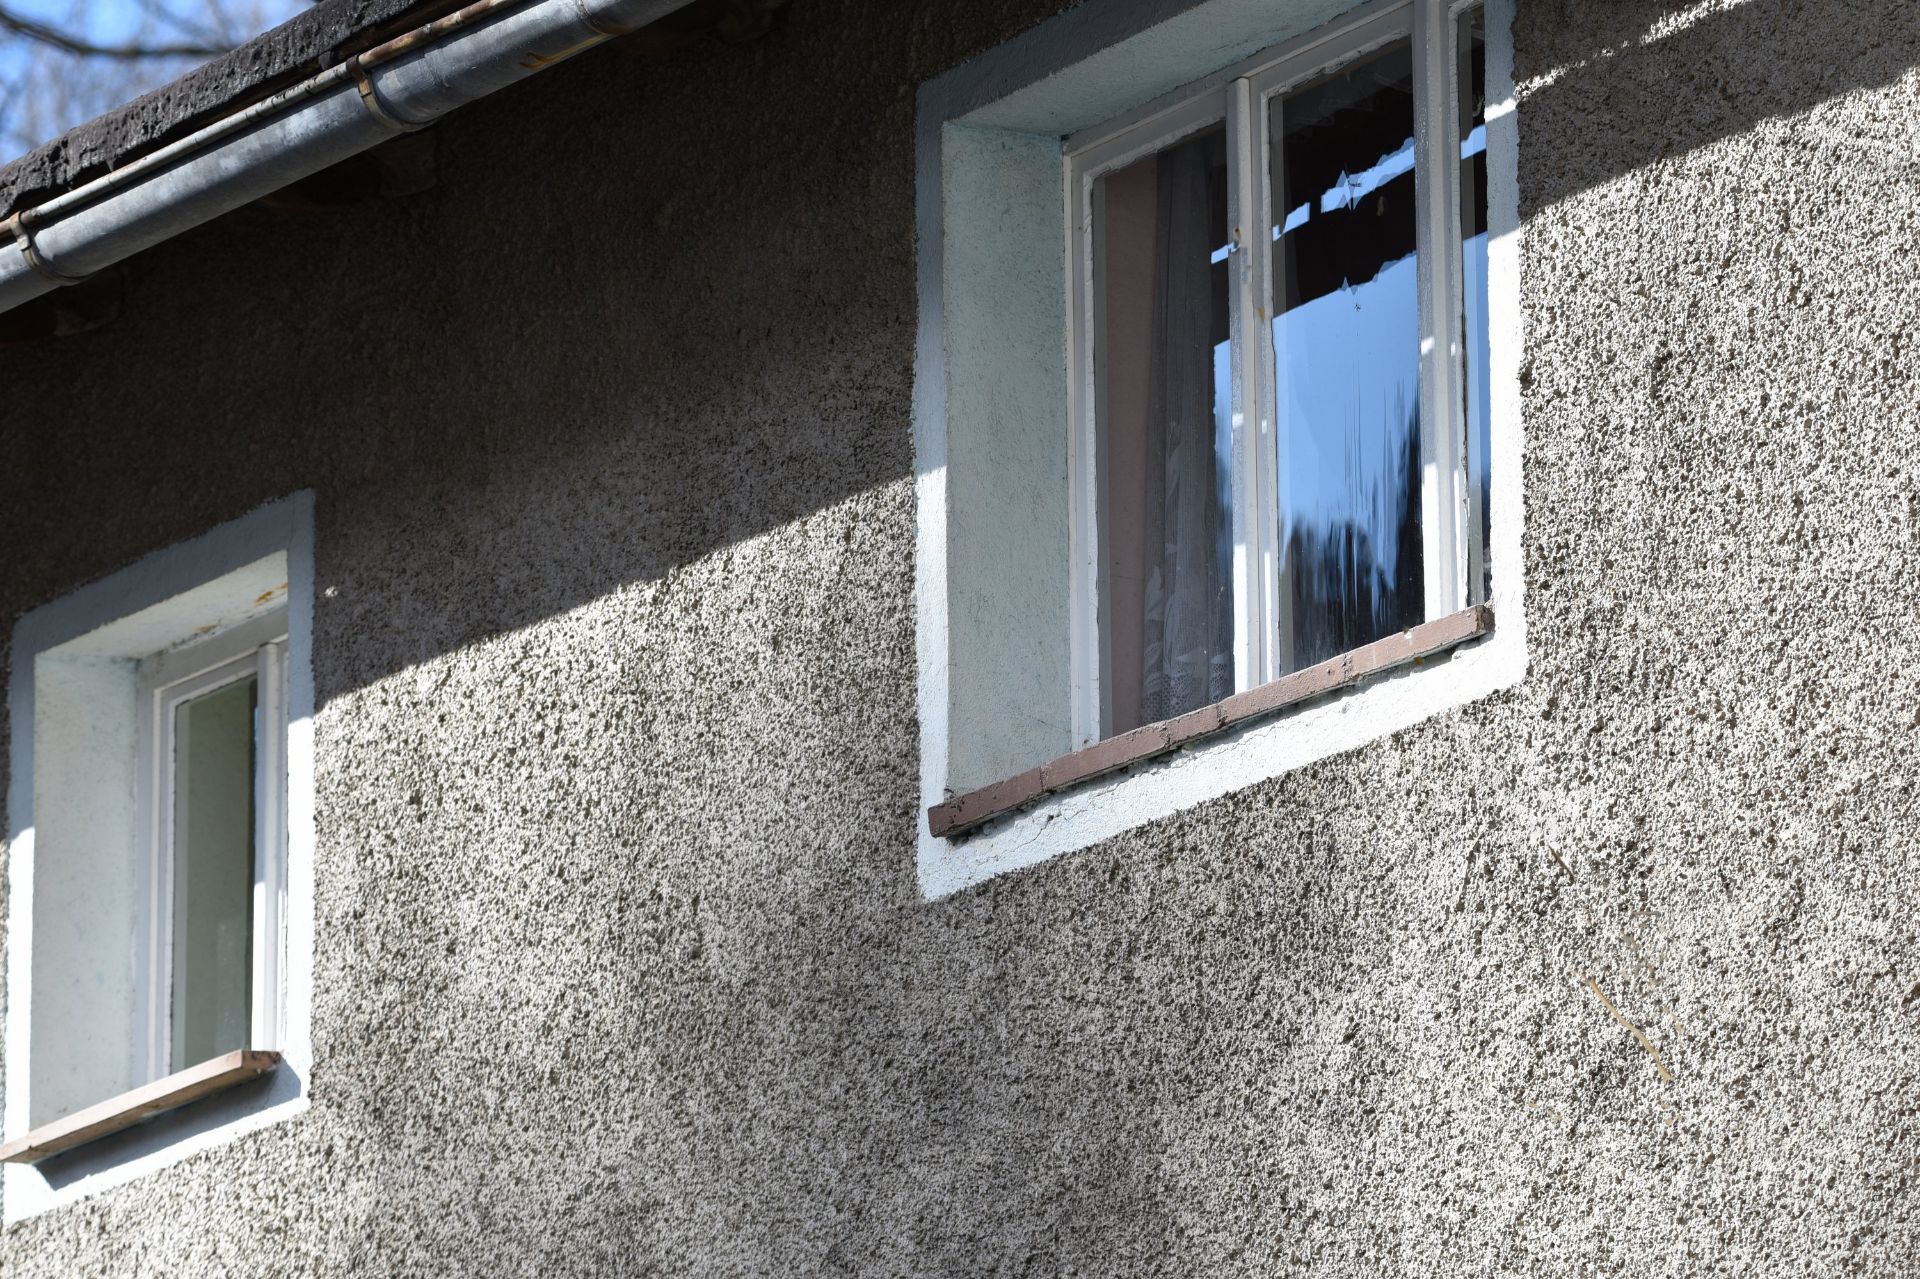 3 FLOOR HOUSE IN GORNAU, SAXONY, GERMANY - Image 17 of 62